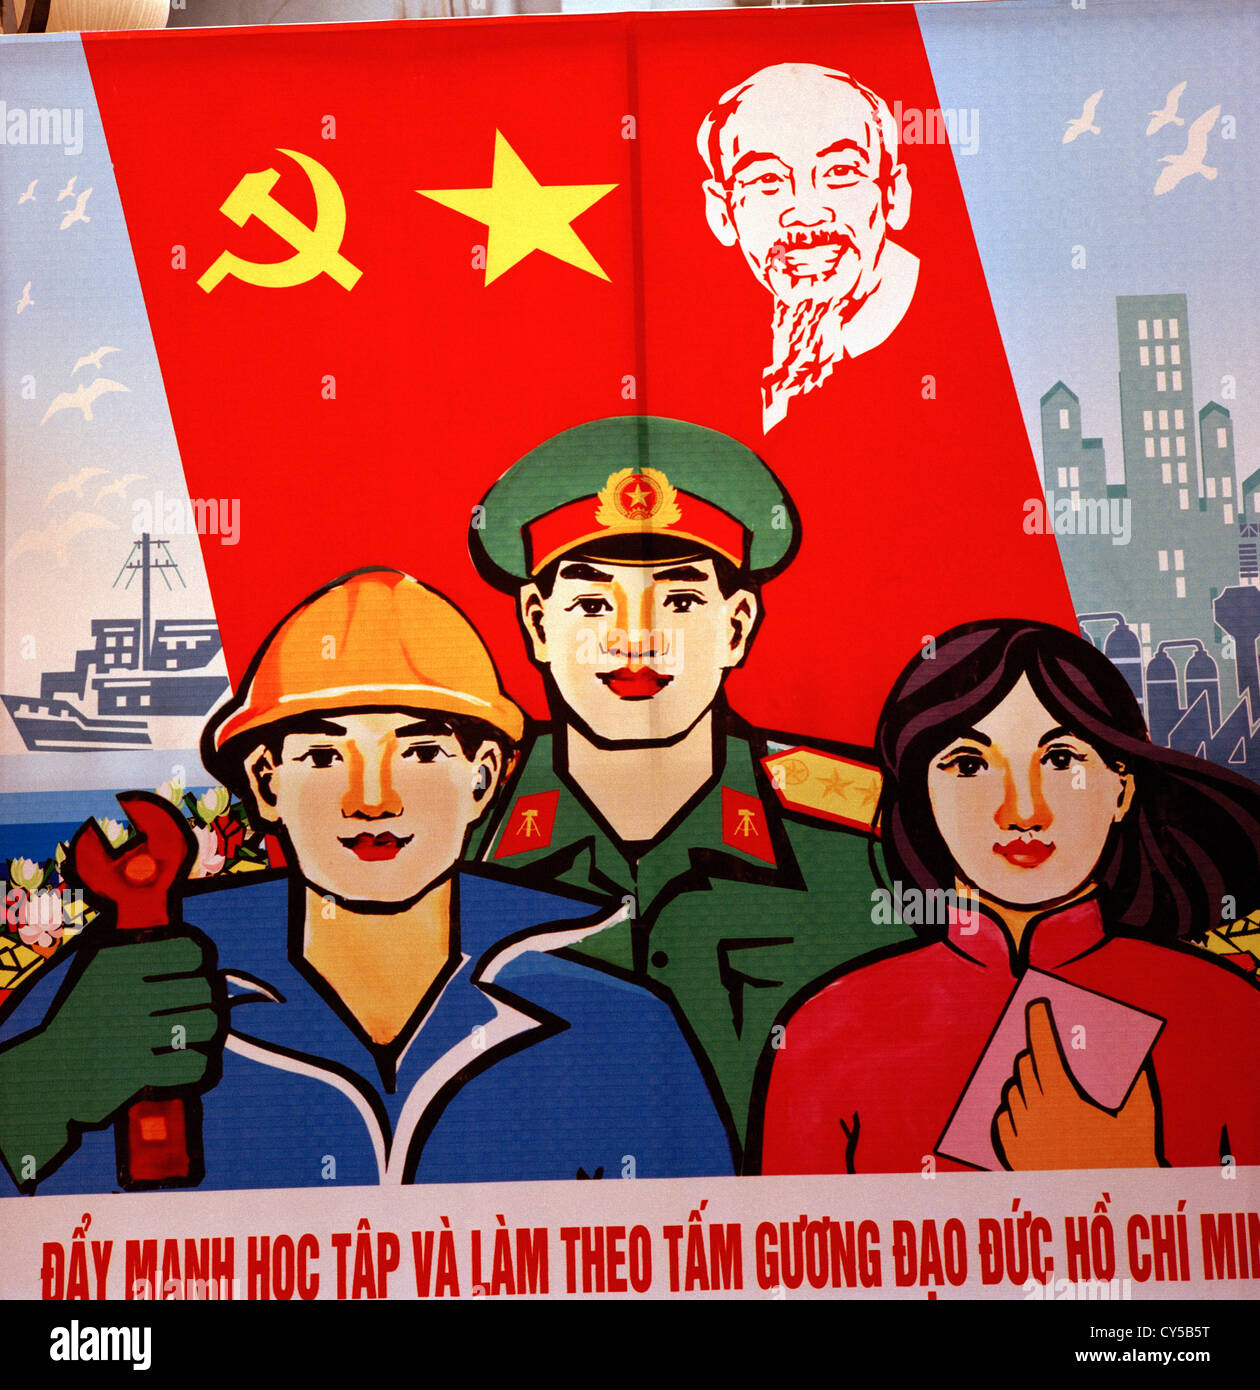 La propaganda política en Hanoi, en Vietnam en el lejano oriente, el sudeste de Asia. La política del comunismo socialismo socialista Comunista Ho chi minh historia viajes Foto de stock